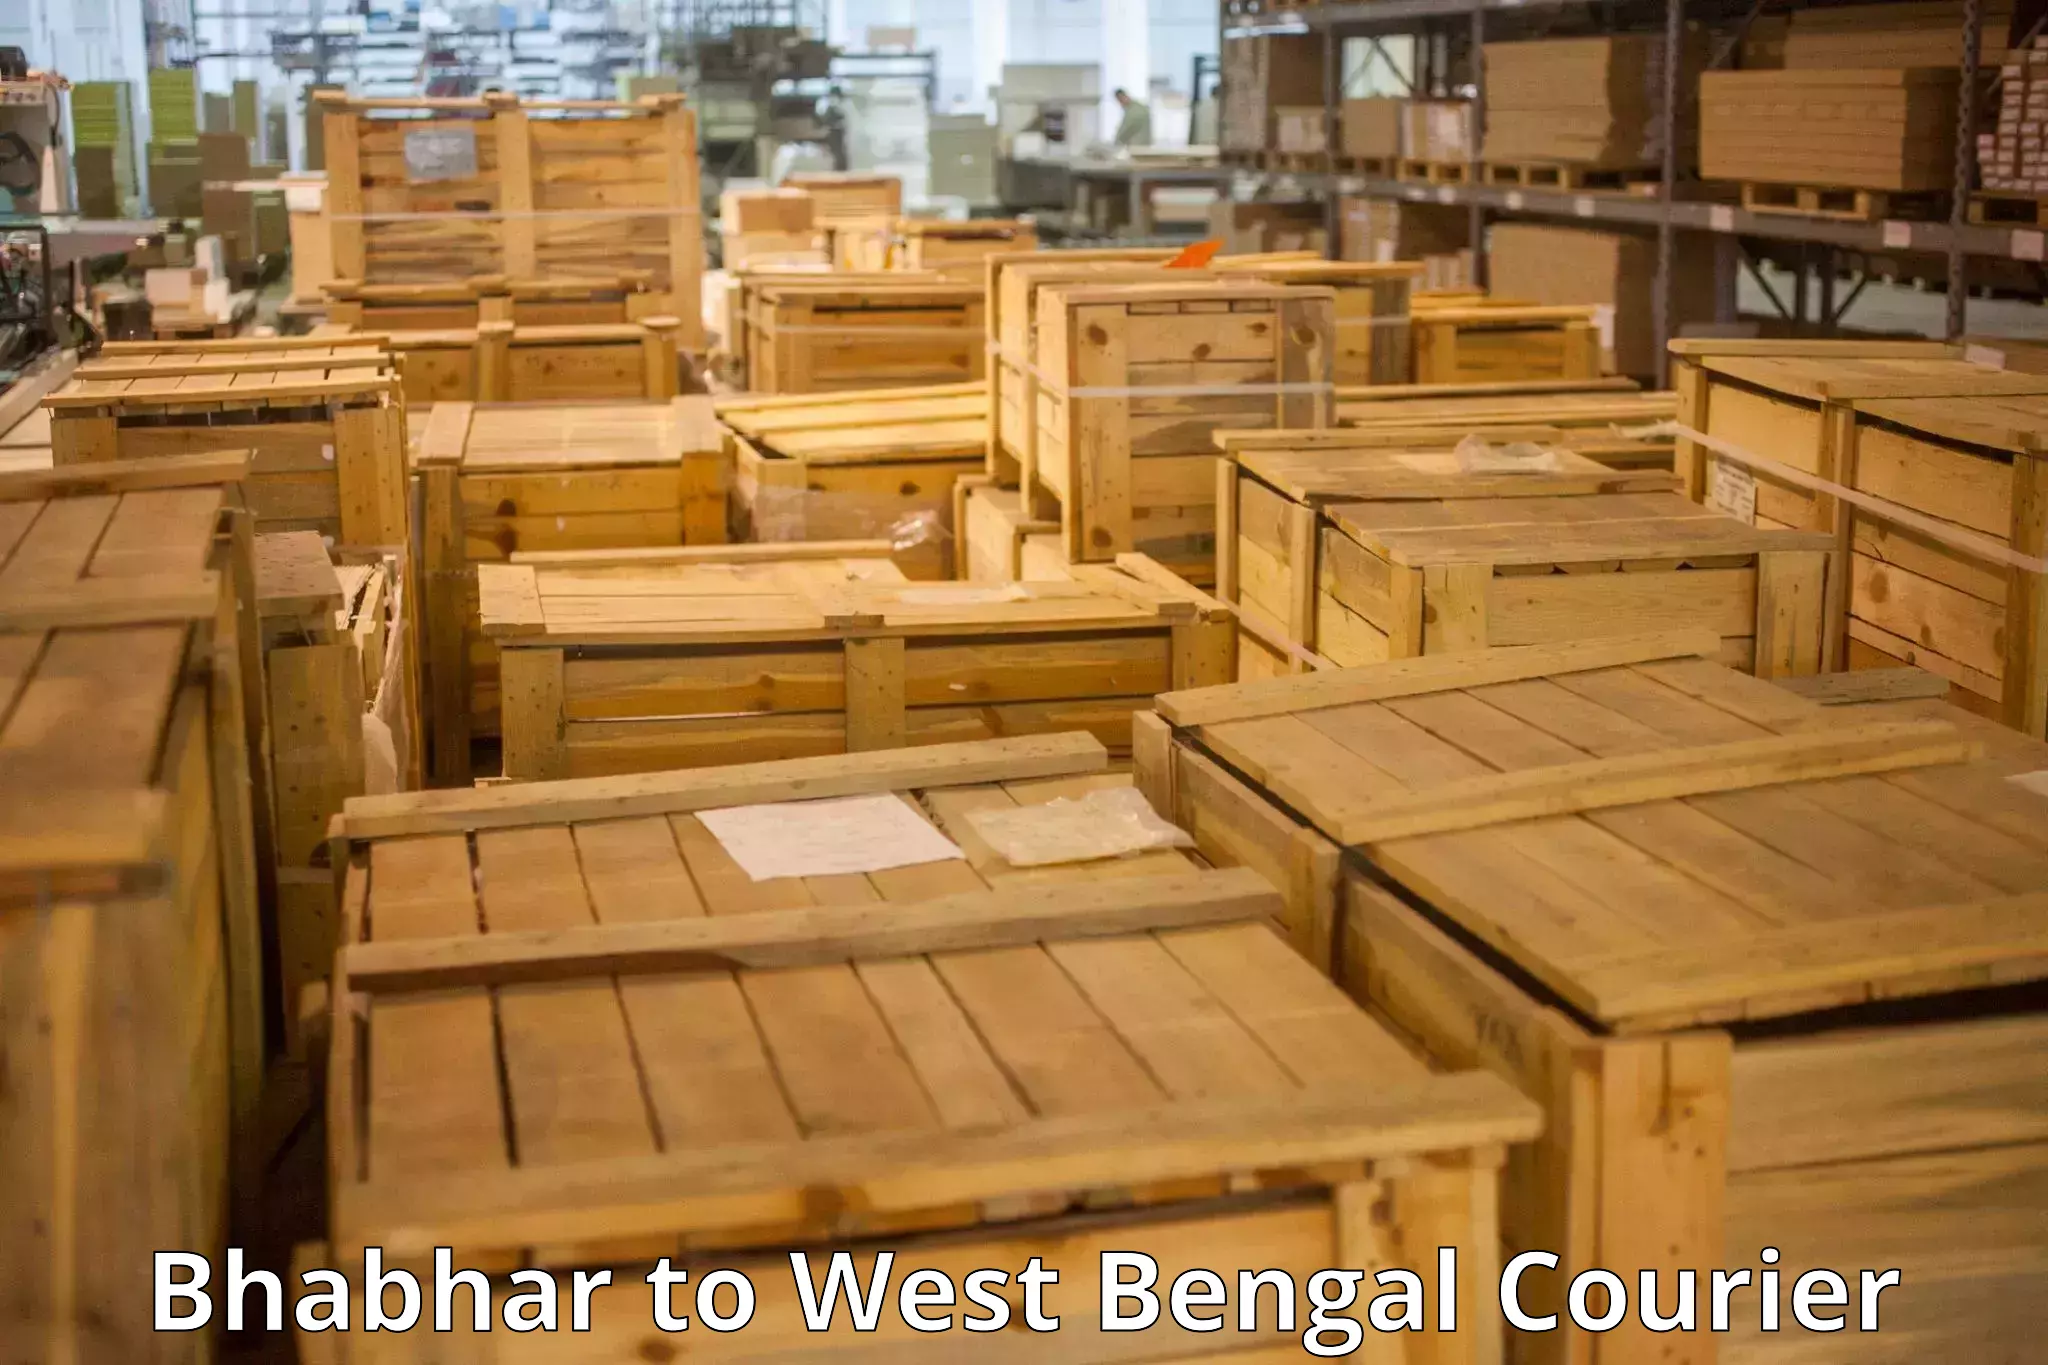 Urgent luggage shipment Bhabhar to West Bengal